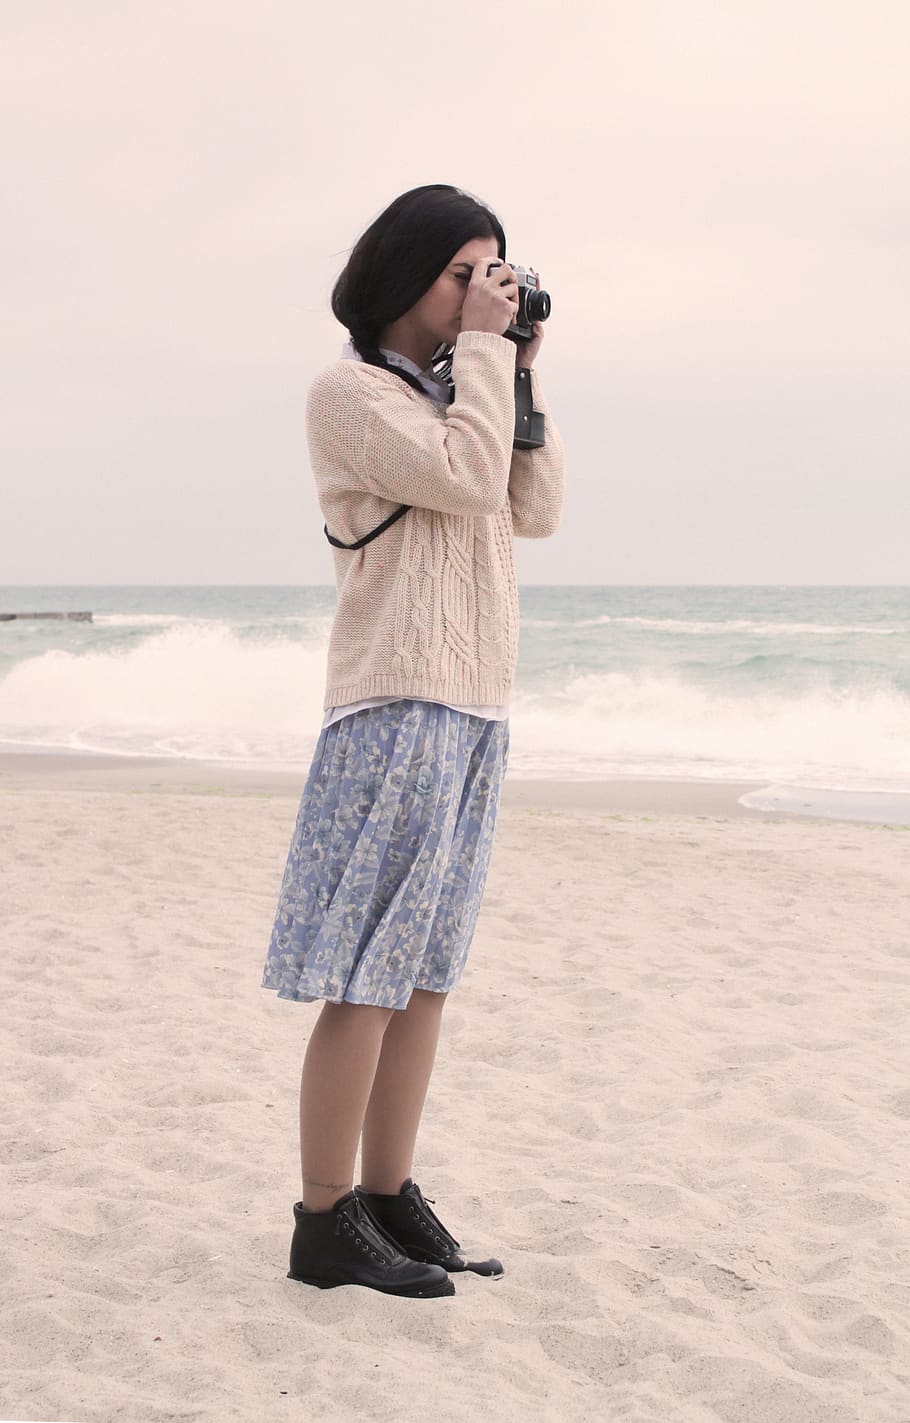 menina, câmera, mar, zênite, lente, fotógrafo, baía, modelo, viagem, praia